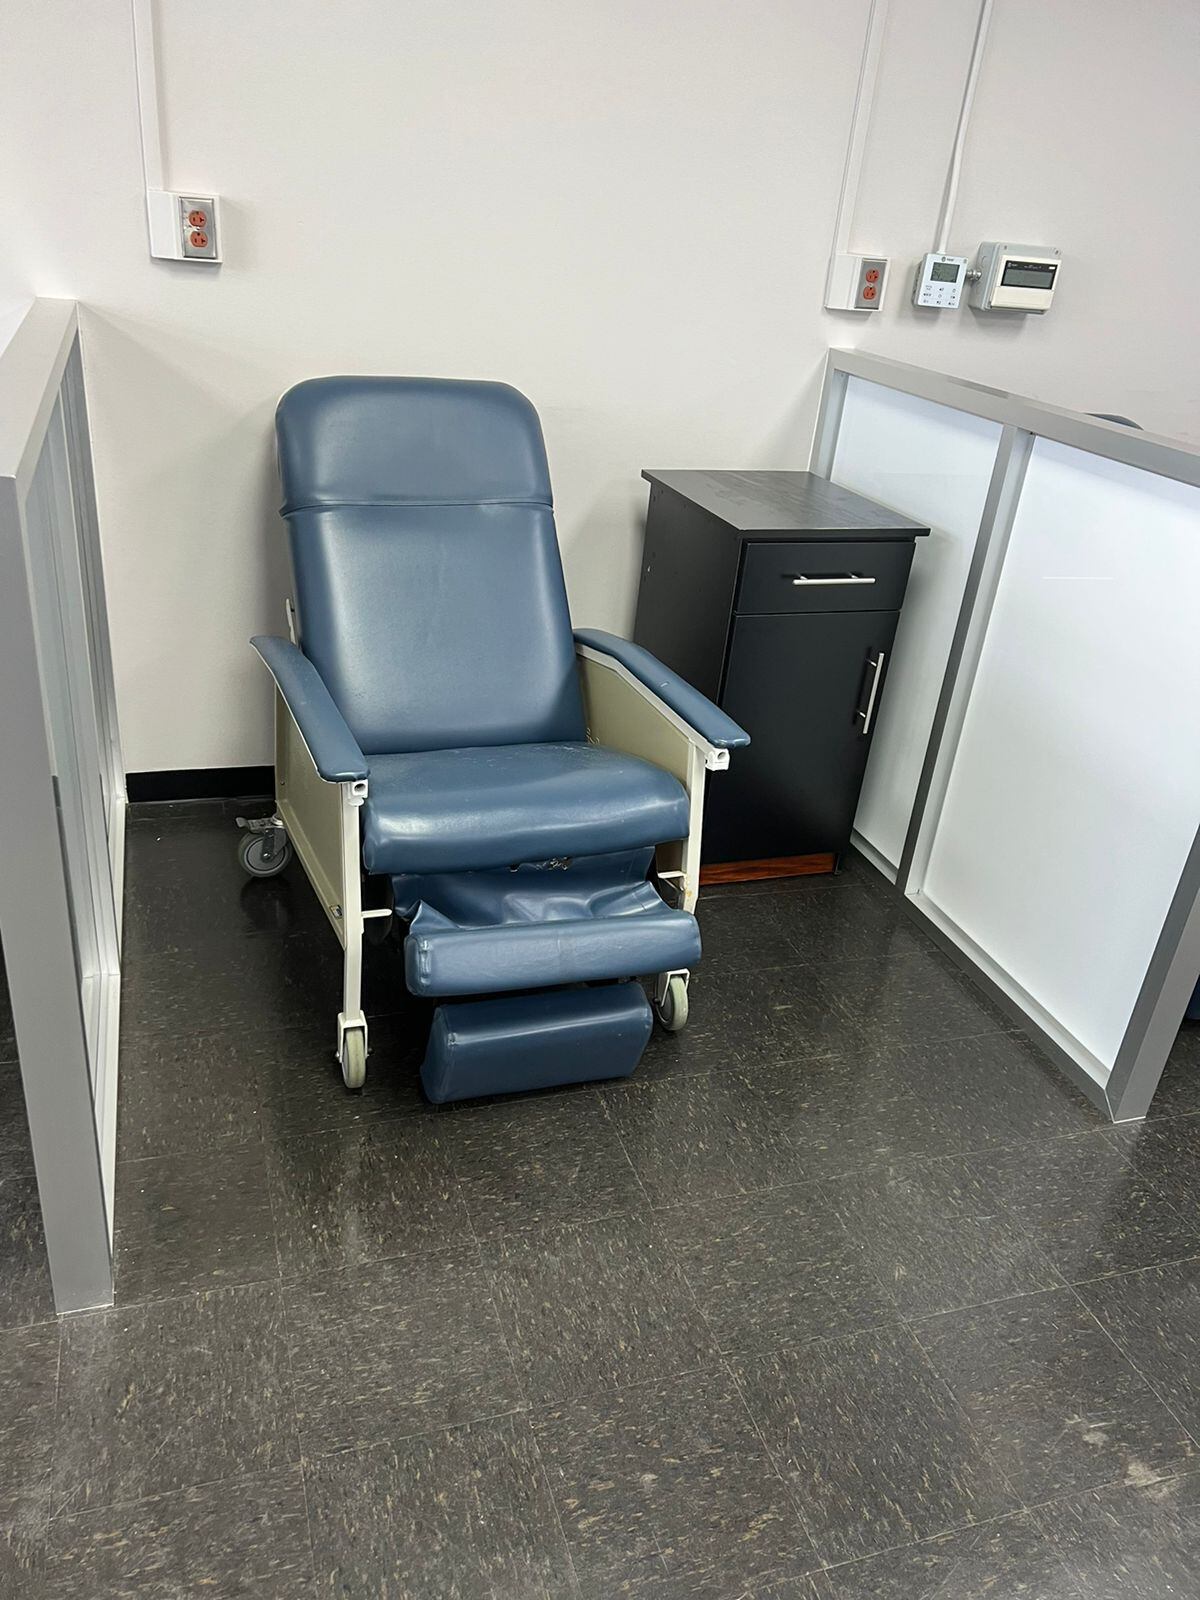 Los pacientes del Hospital San Carlos contarán con un sillón y una mesa de noche como estos de la foto mientras reciben quimioterapia. Fotografía: Cortesía